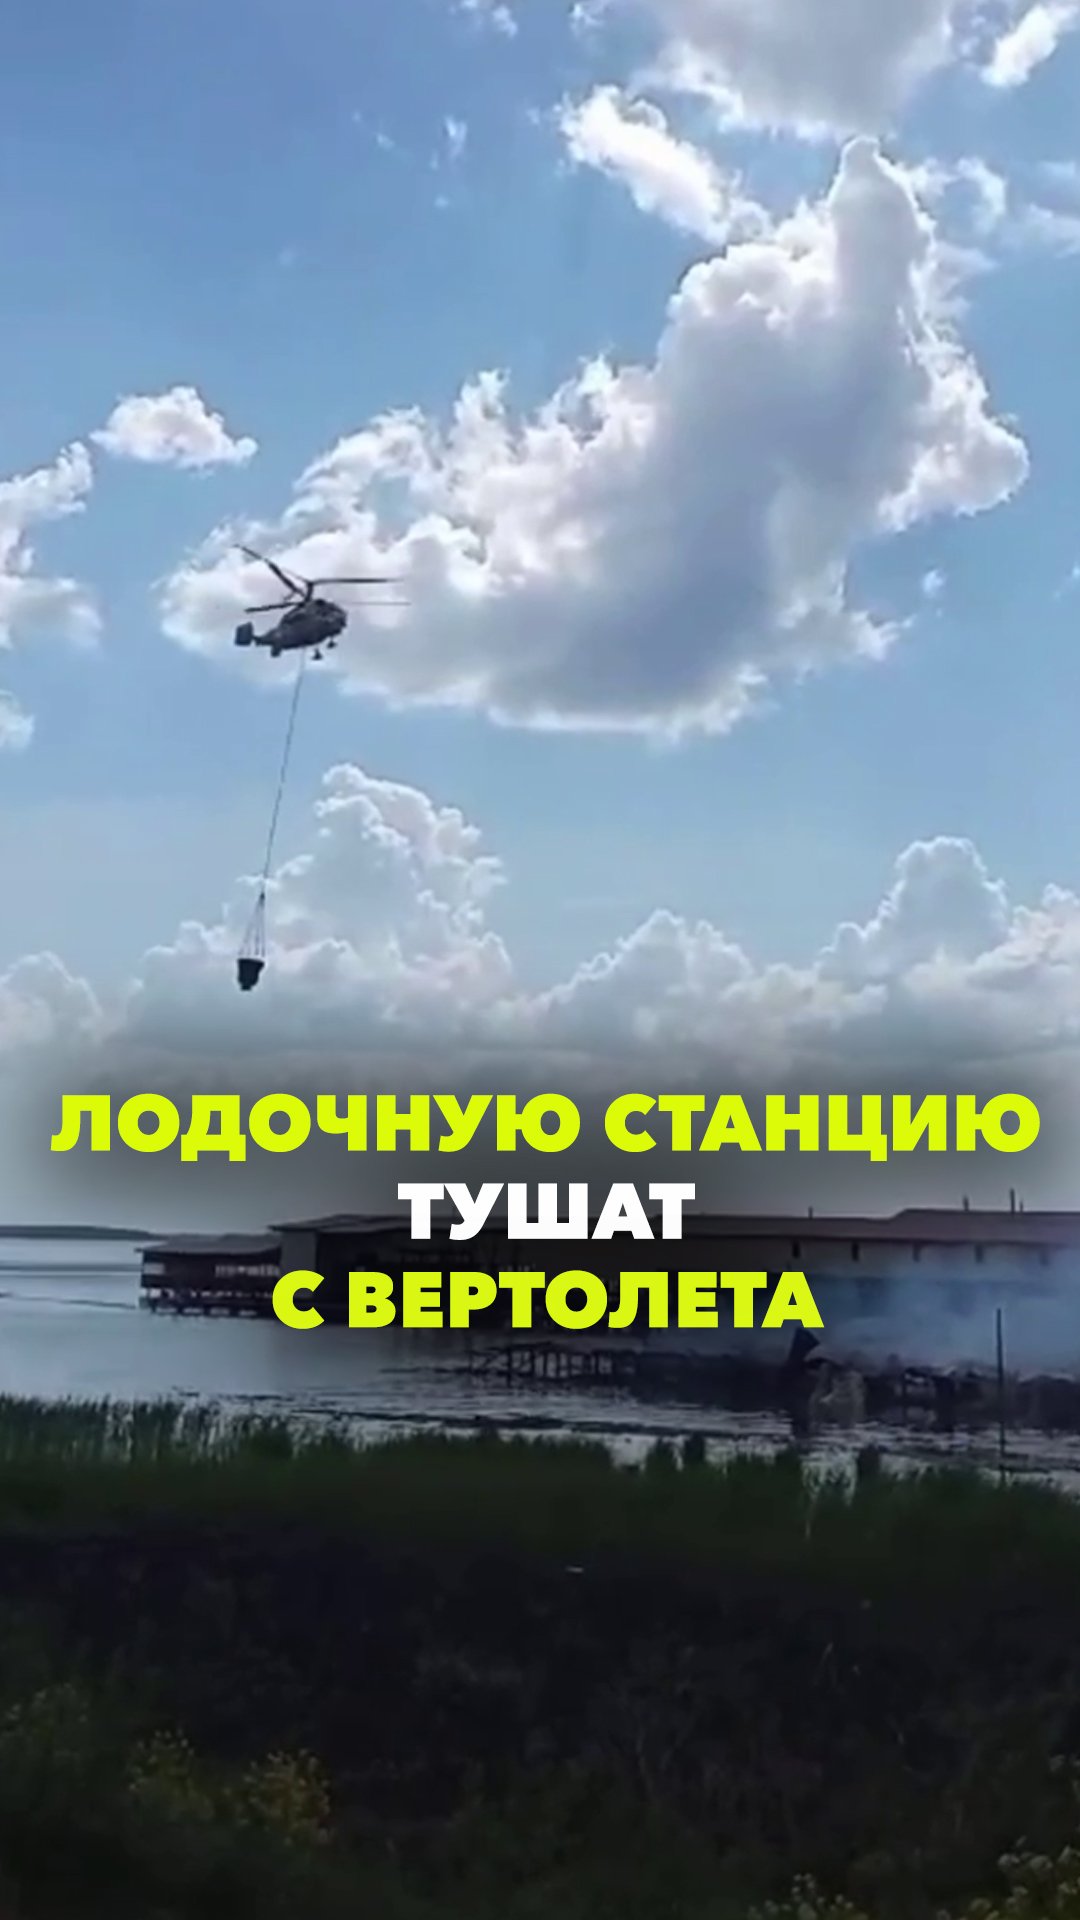 Вертолет МЧС тушит пожар на лодочной станции БАМ